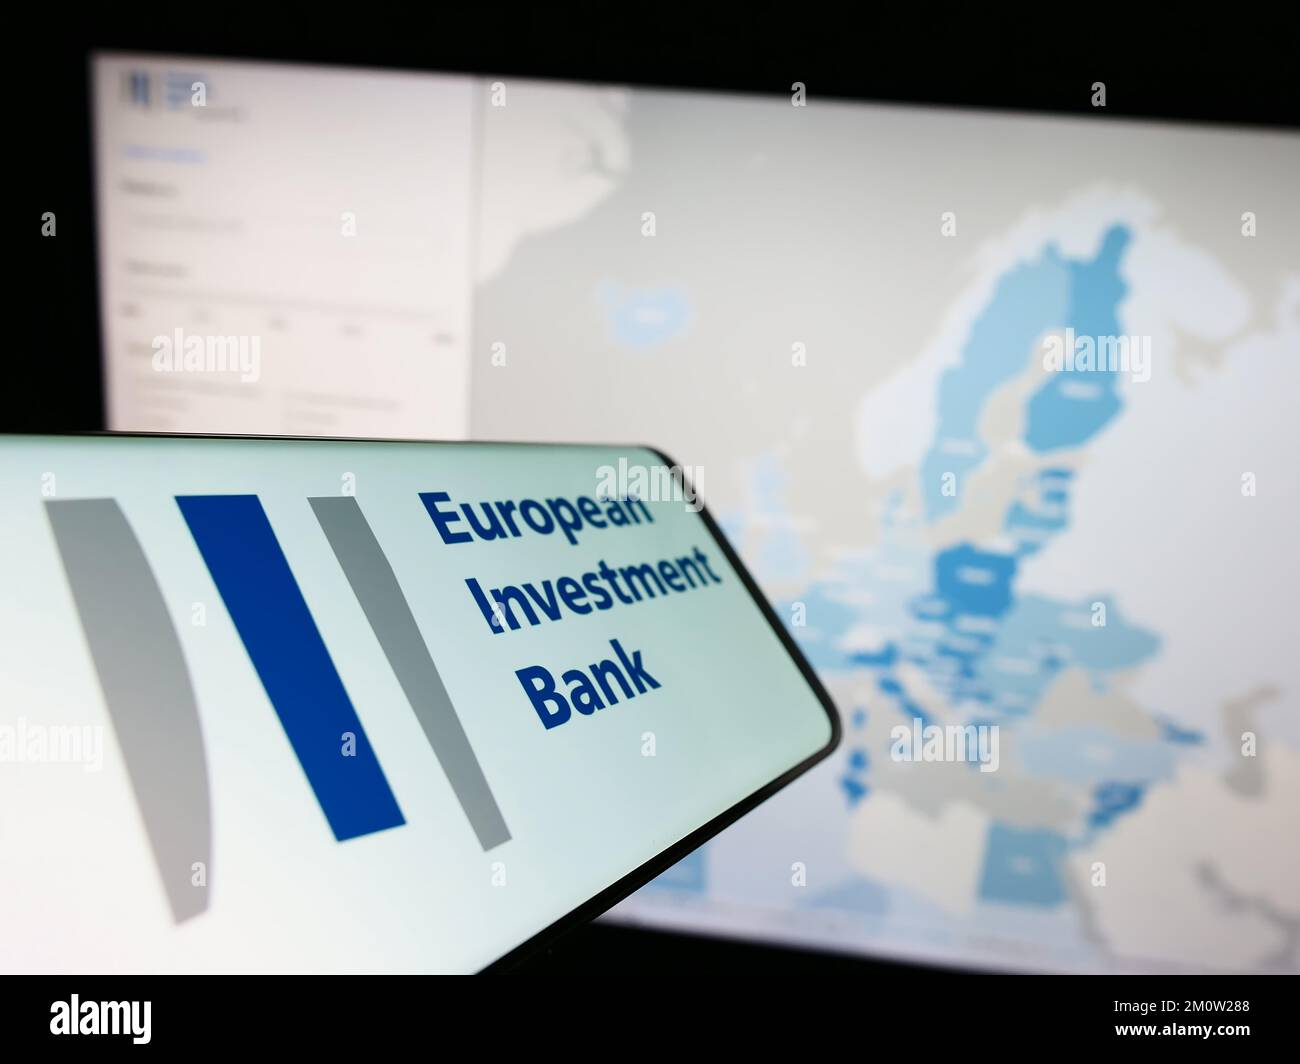 Smartphone avec logo de l'institution de l'UE Banque européenne d'investissement (BEI) à l'écran devant le site Internet. Concentrez-vous sur le centre de l'écran du téléphone. Banque D'Images